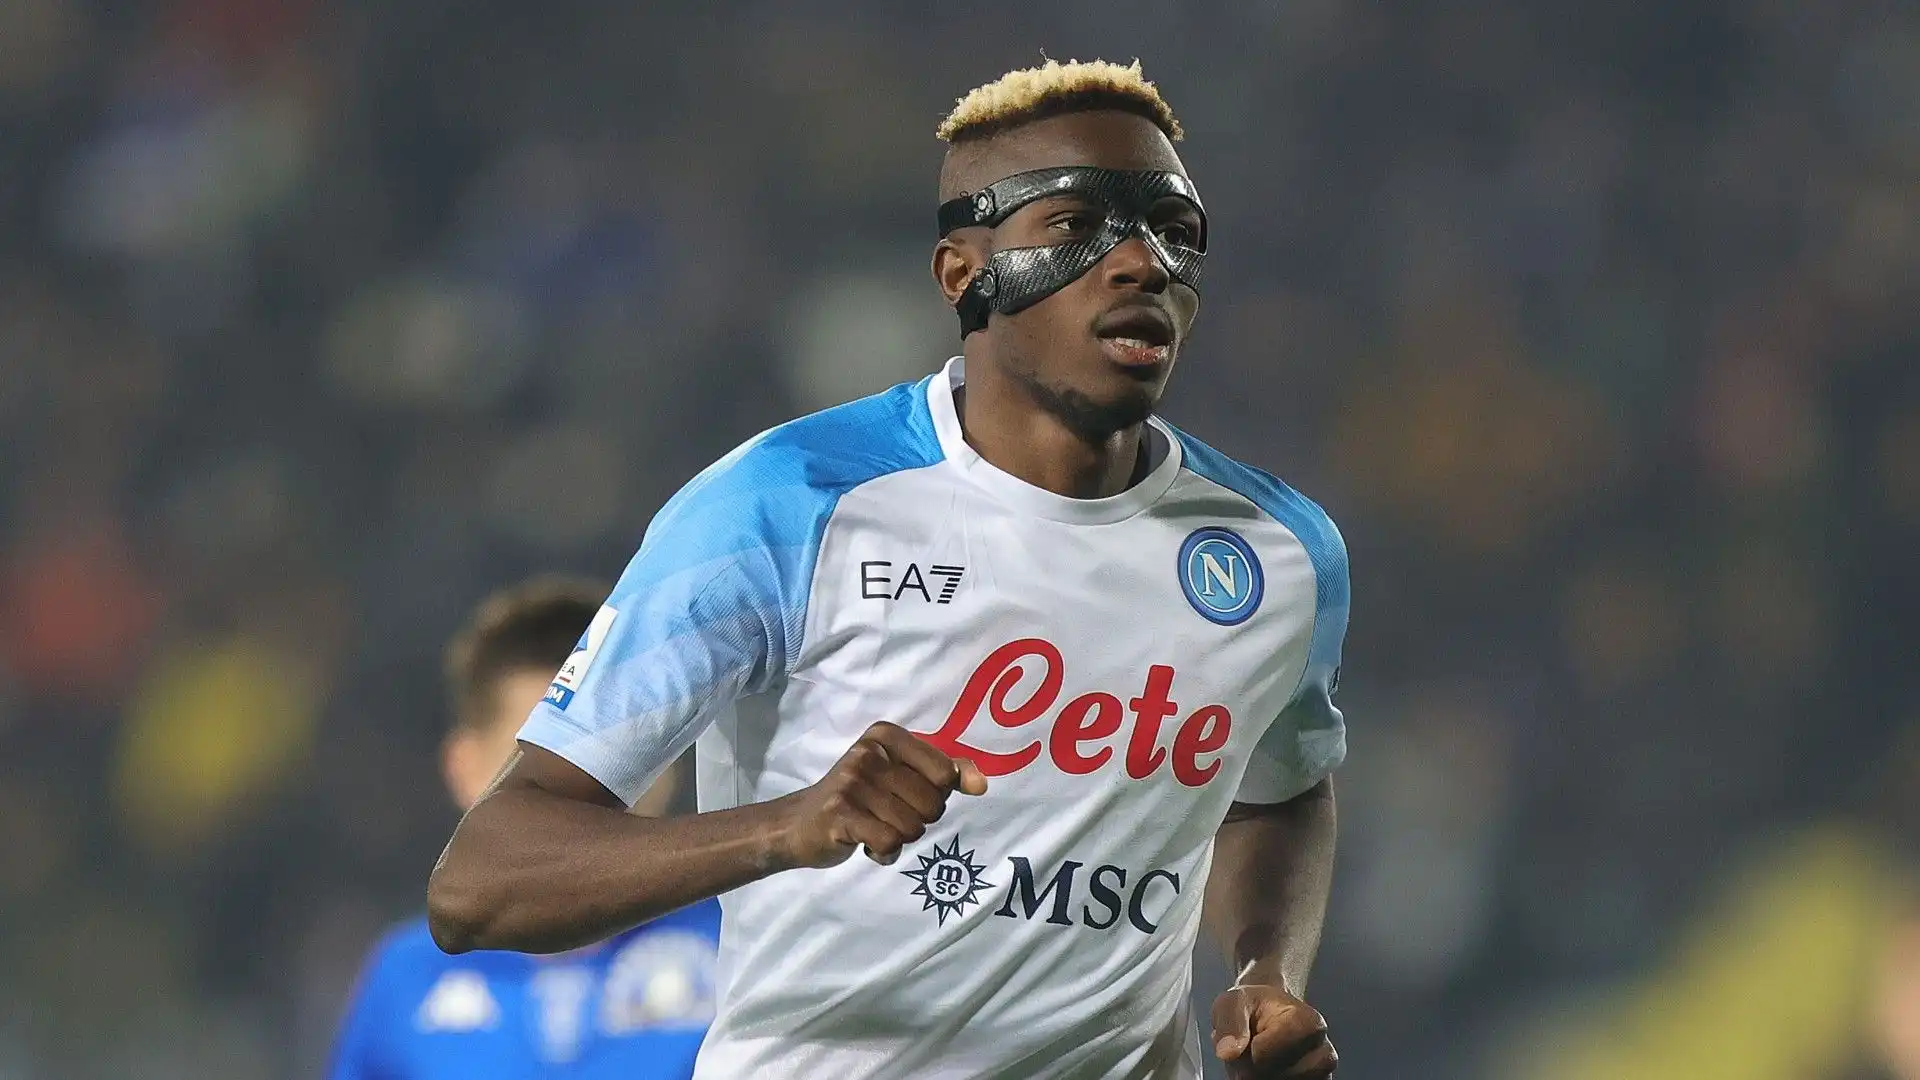 L'attaccante del Napoli è il calciatore nigeriano col maggior numero di gol nella storia della serie A